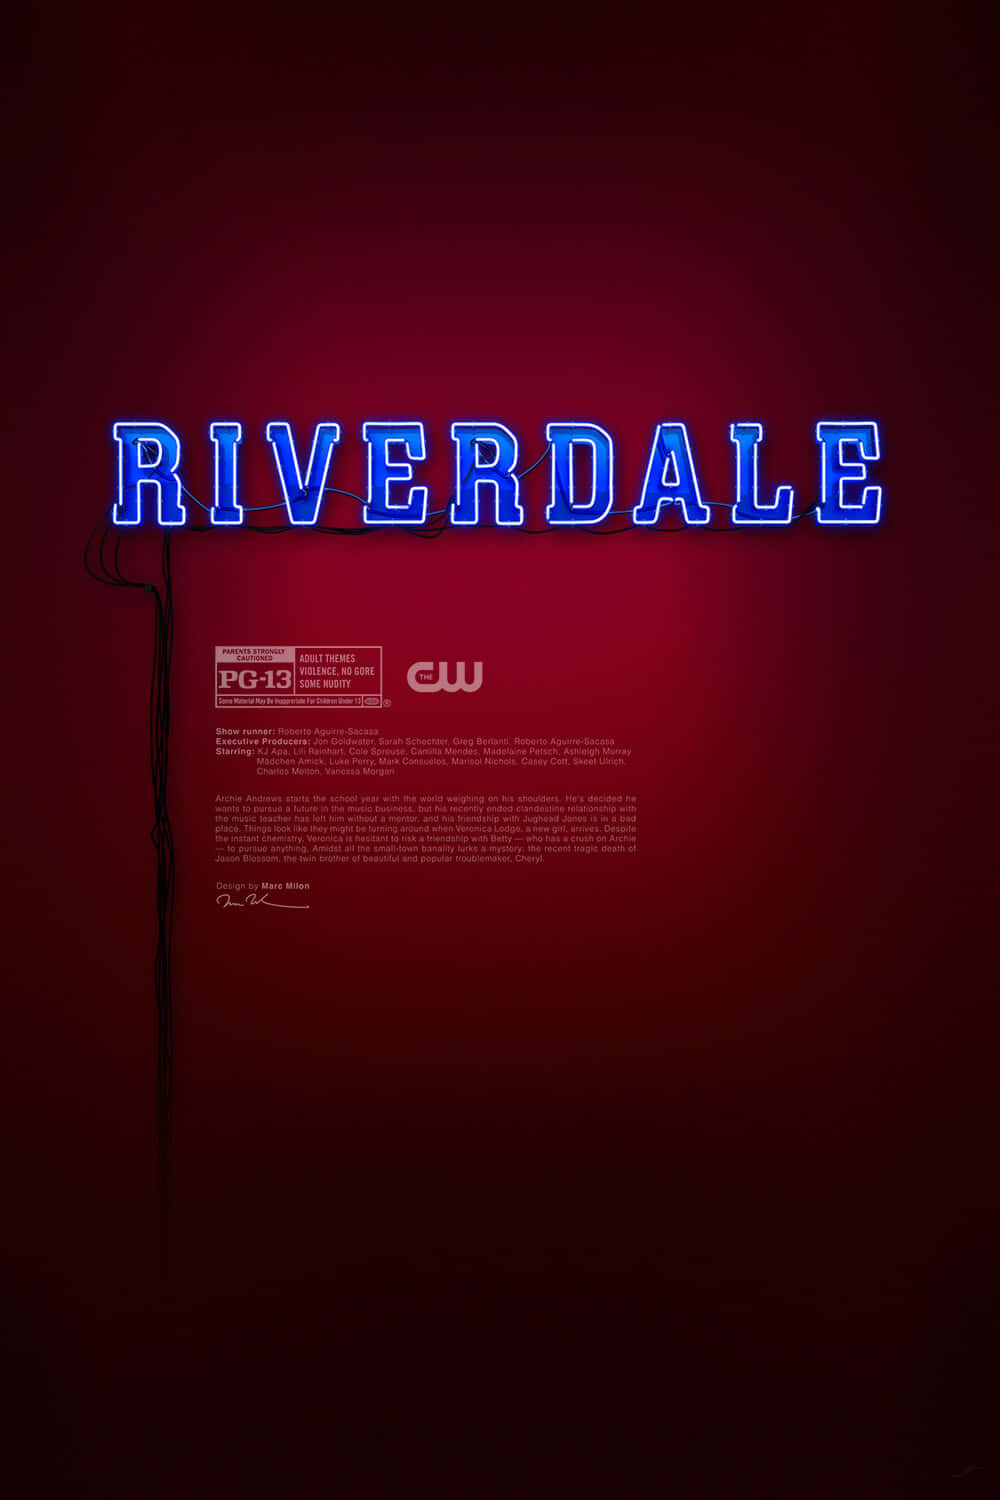 Iquattro Protagonisti Di Riverdale Nella Loro Scena Iconica